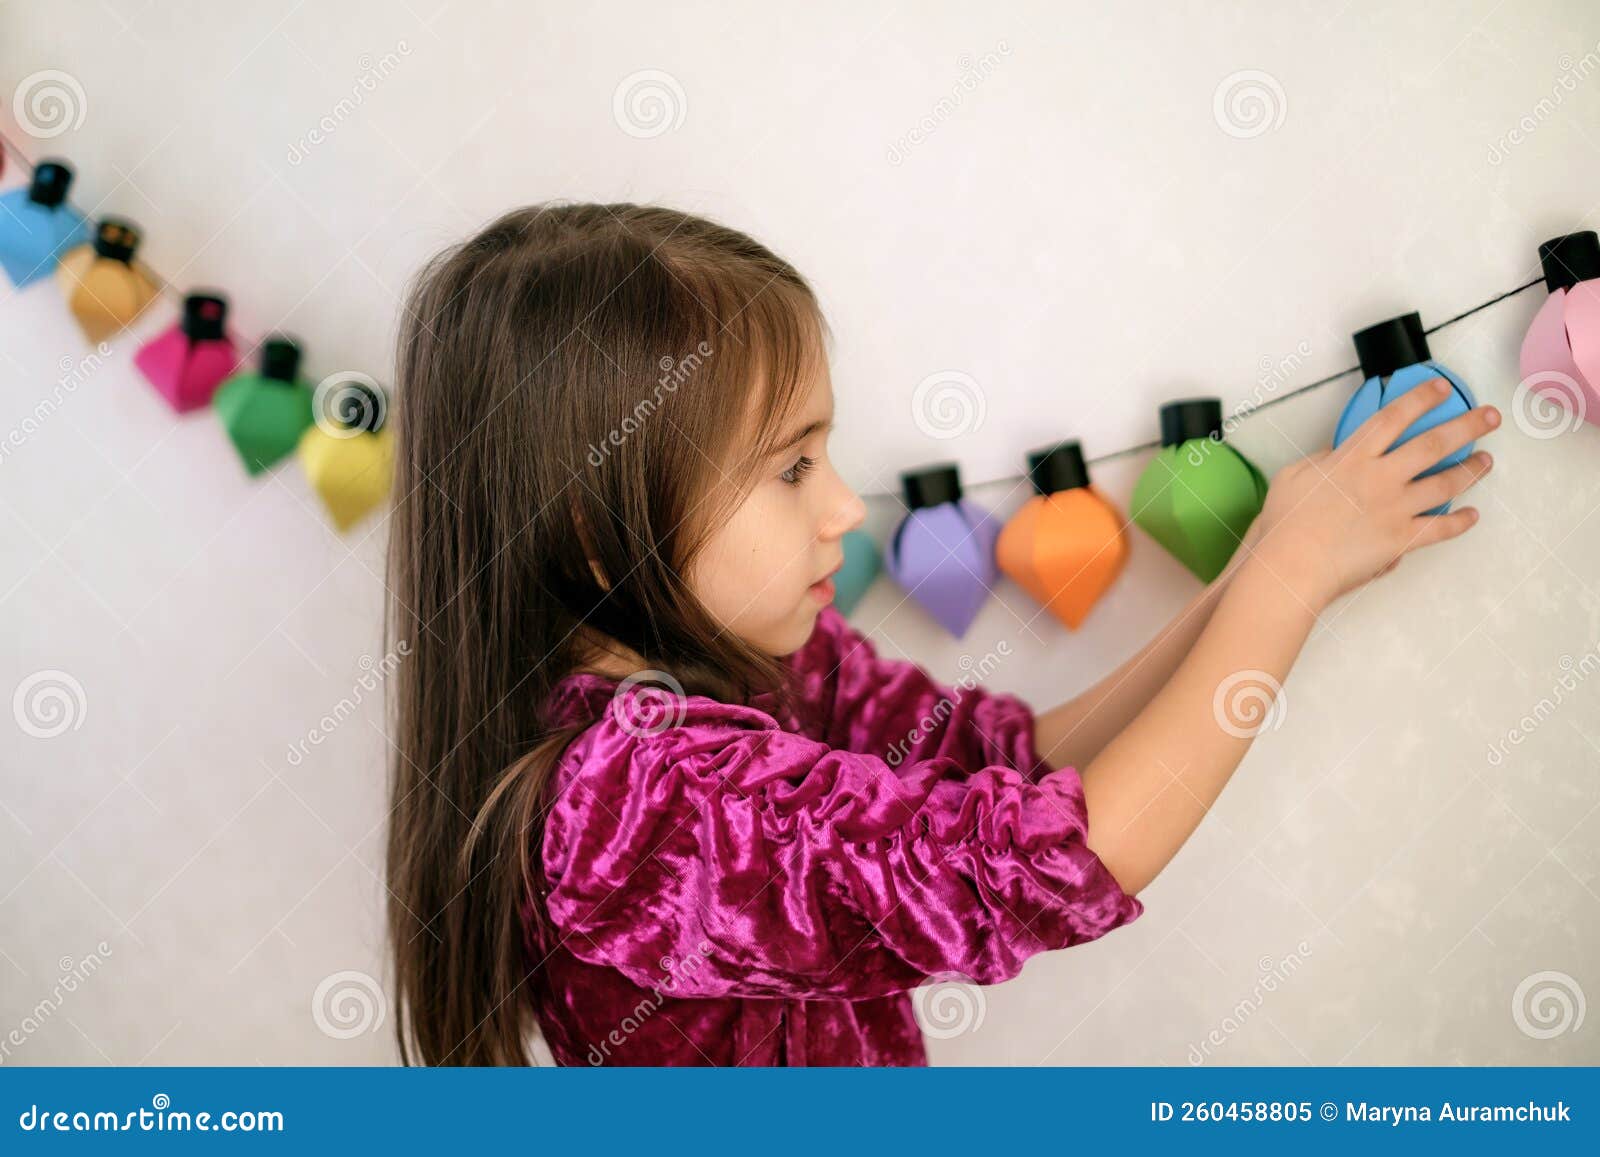 La Fille Accroche Au Mur Une Guirlande De Papier Artisanale. Image